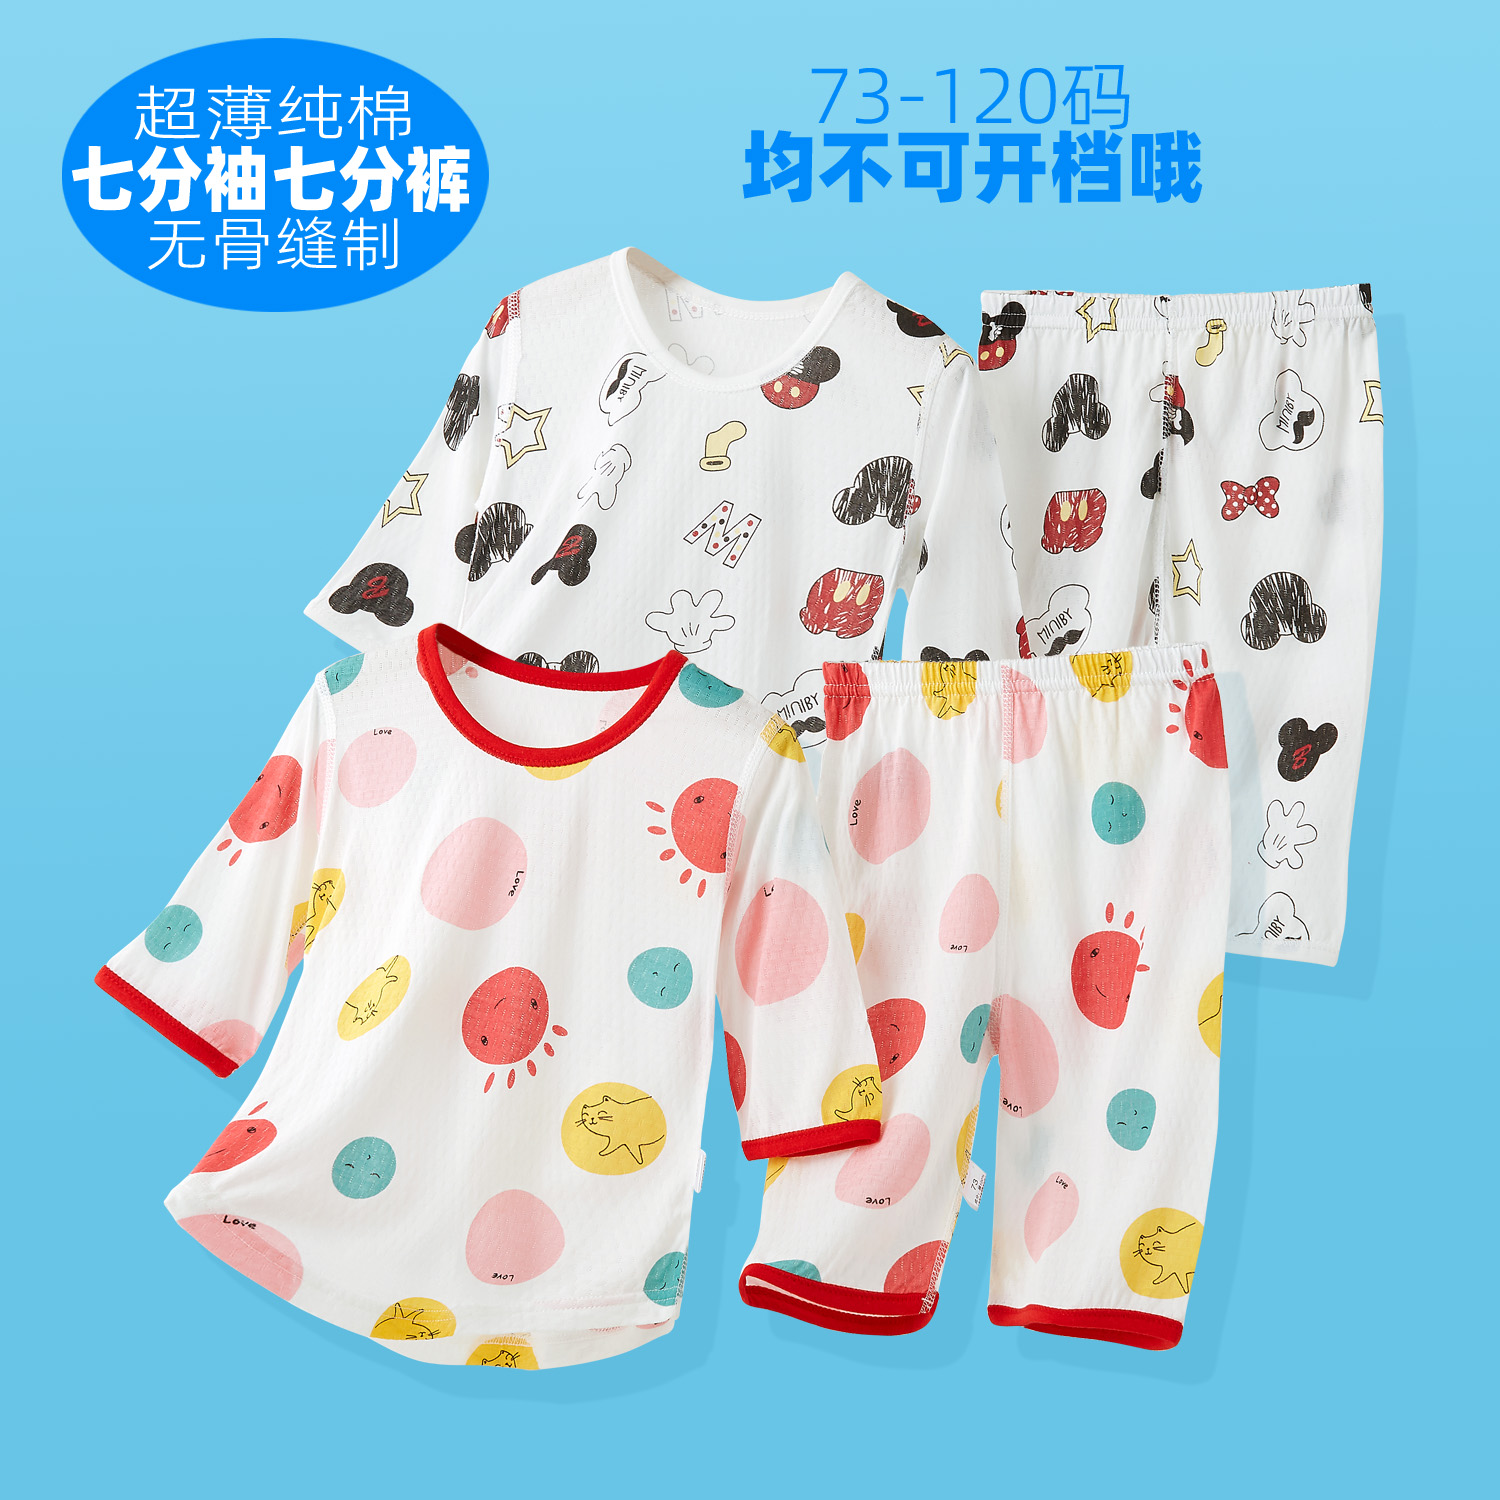 婴儿家居服套装薄纯棉七分袖裤夏装0-4岁男女宝宝睡衣小童空调服